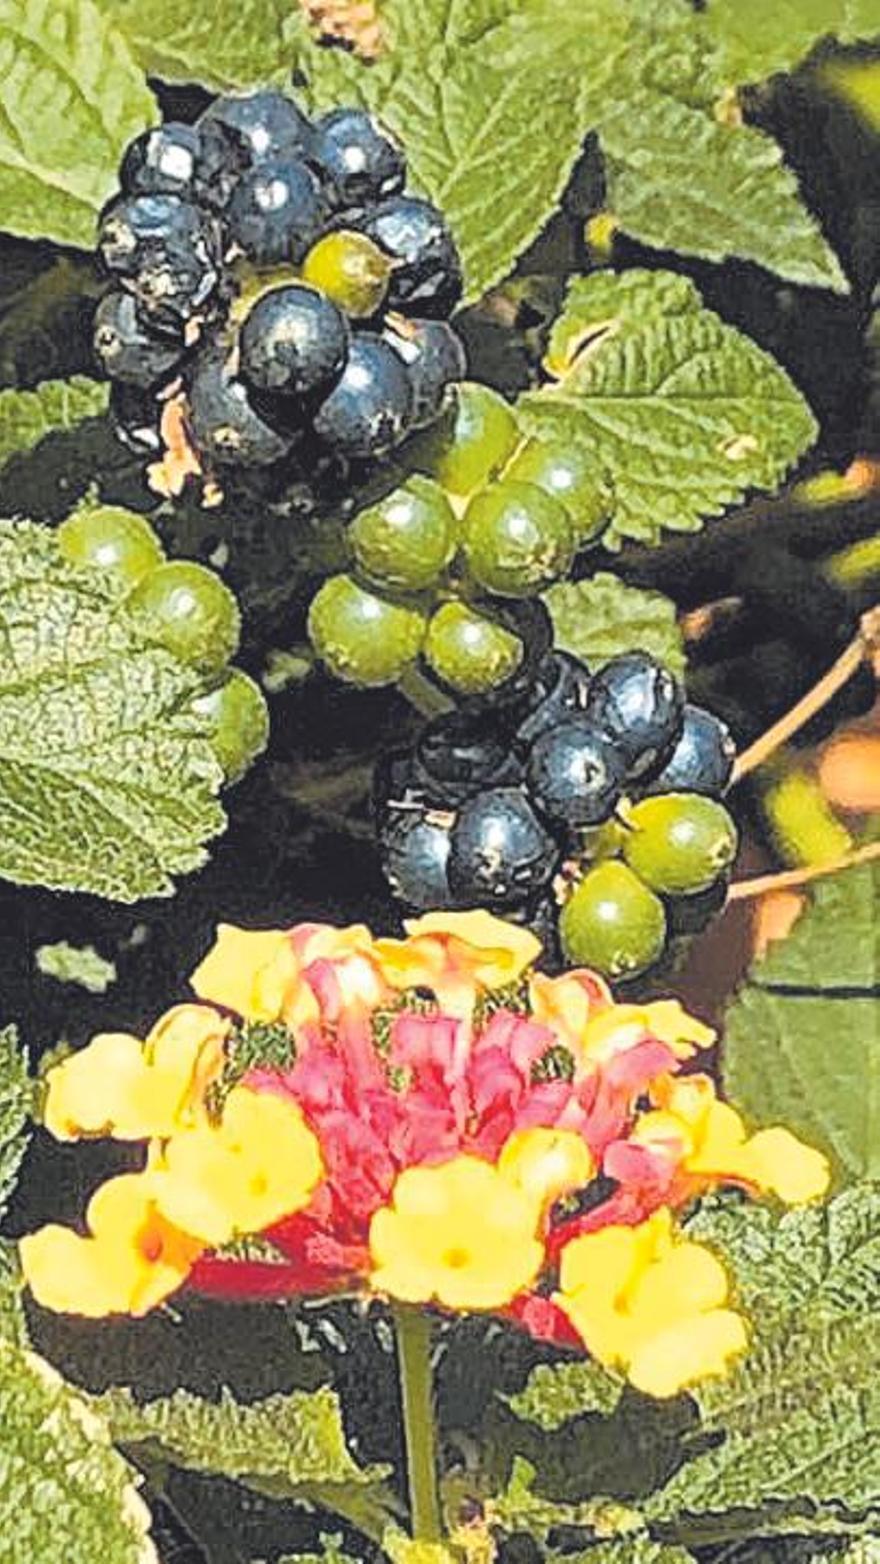 Die Beeren der Lantana (Wandelröschen) werden leicht verwechselt. 